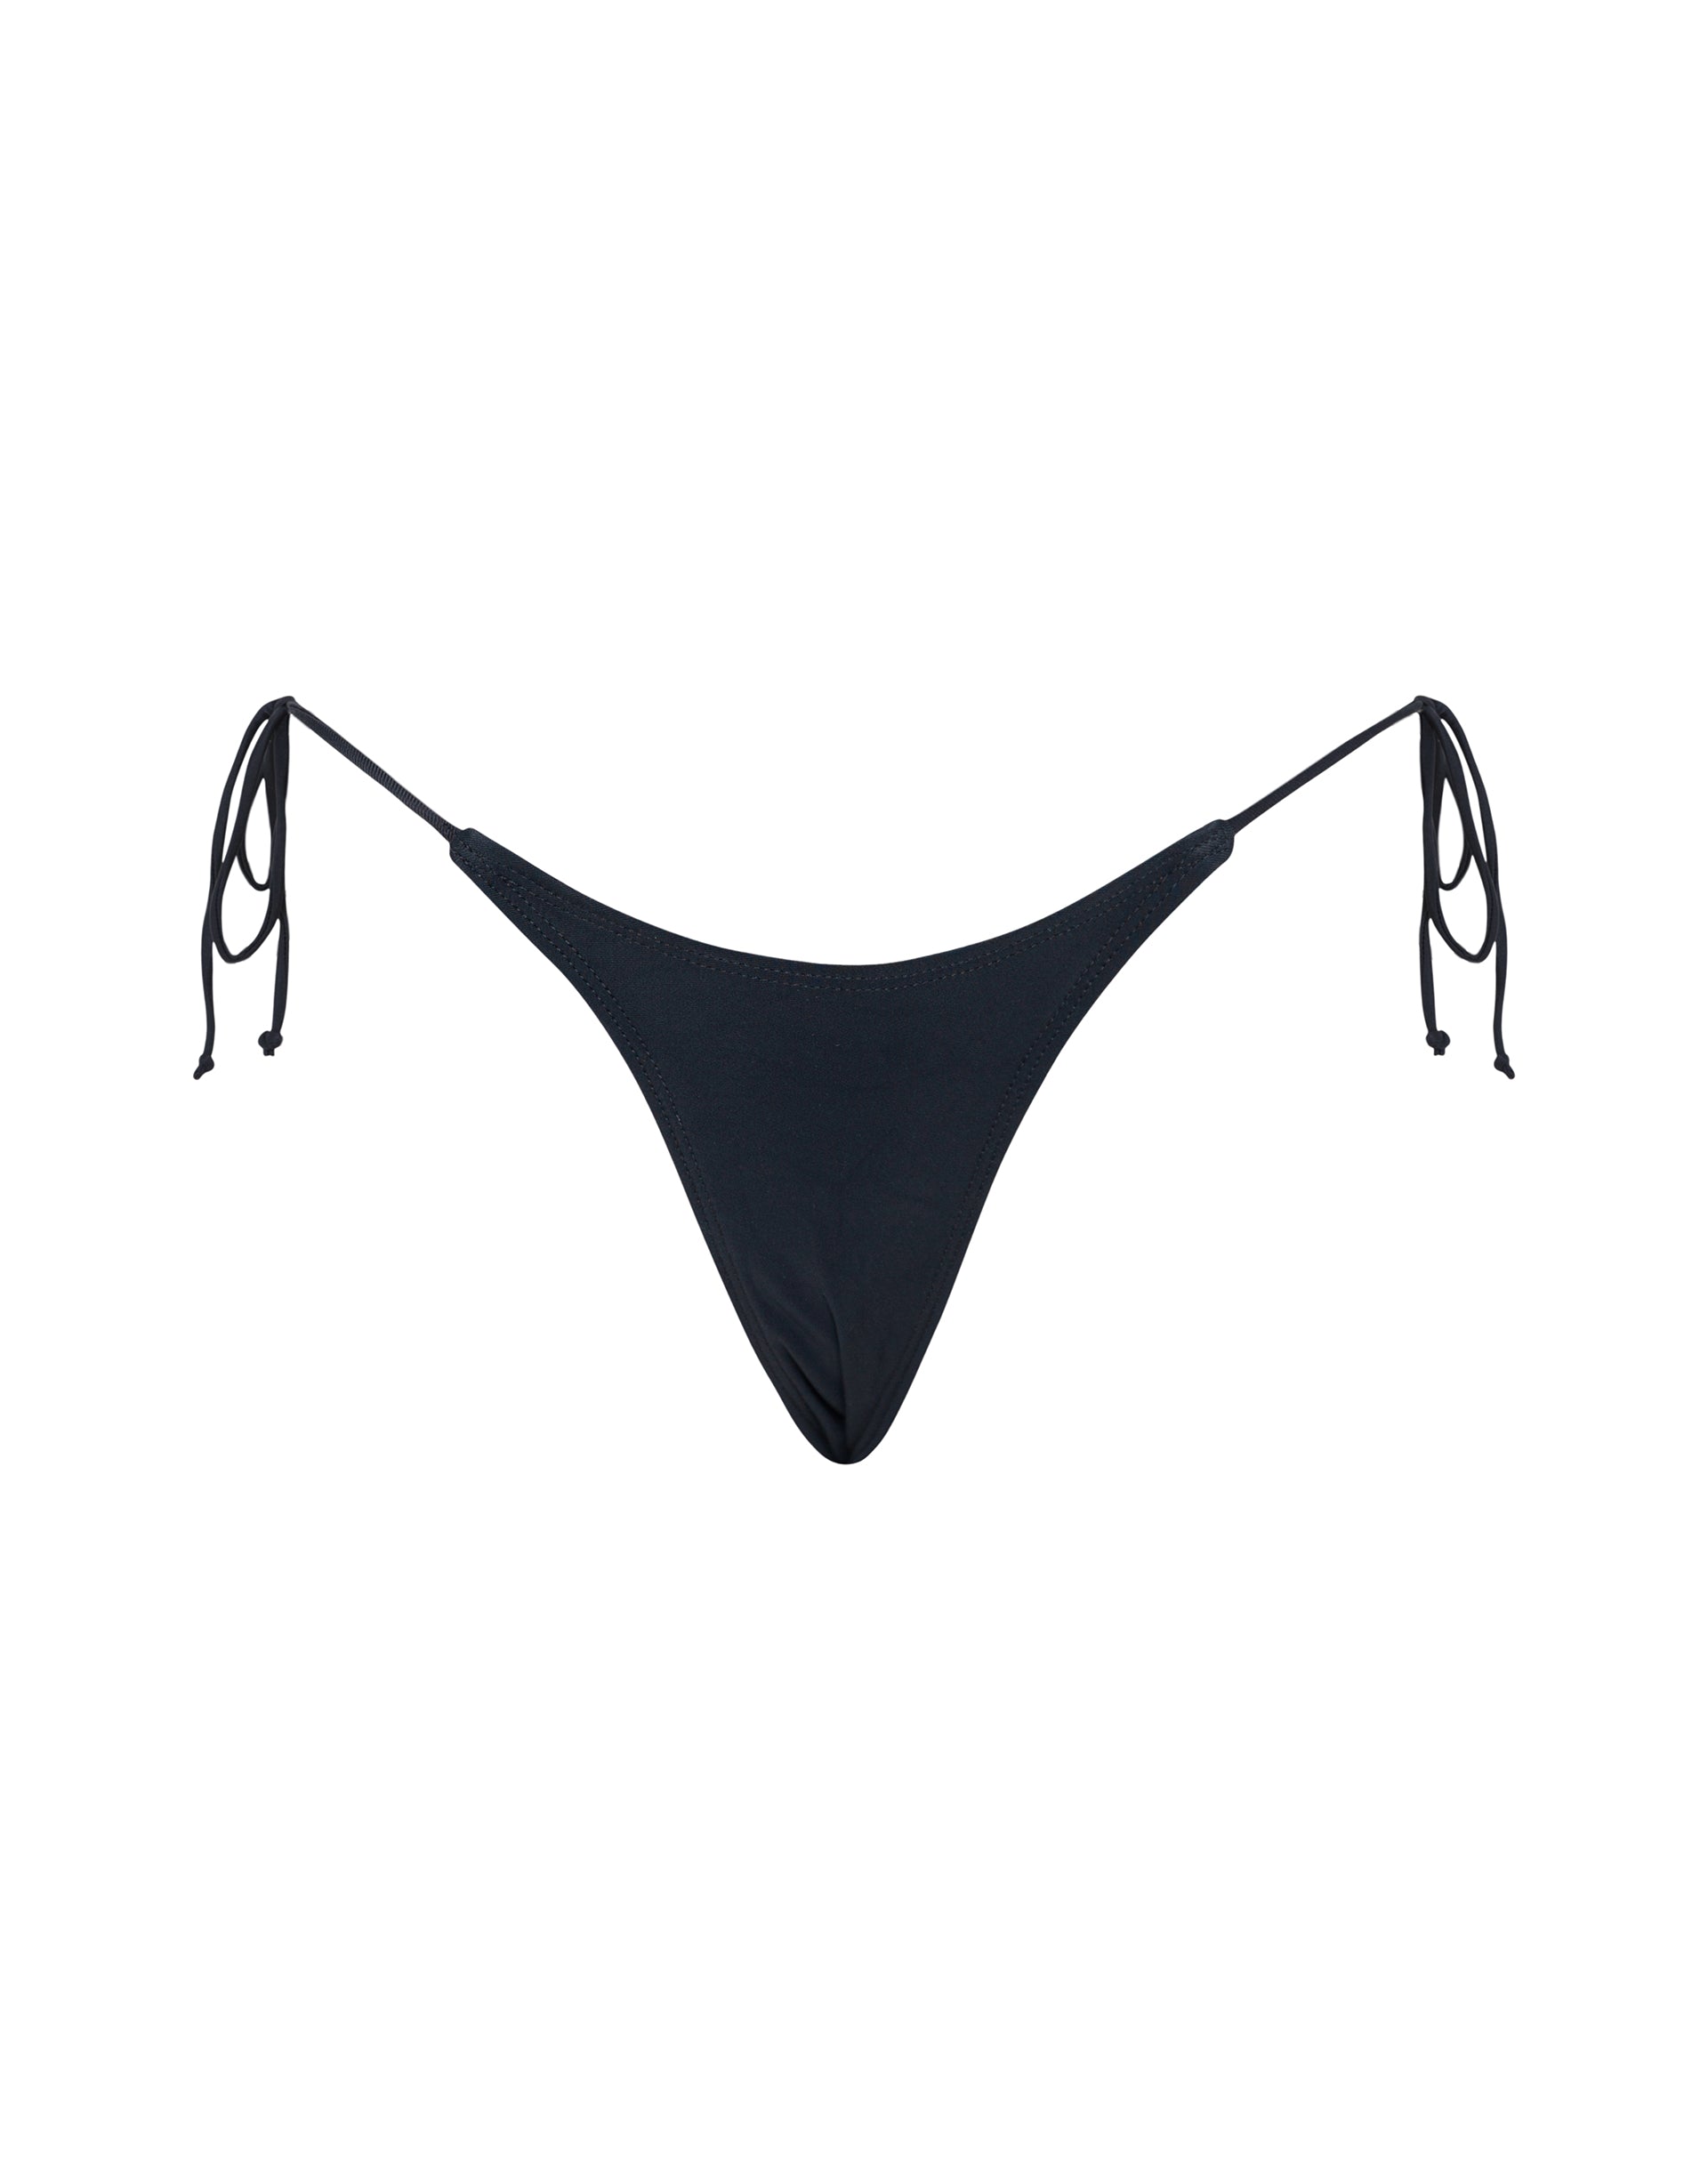 Image of Lentra Bikini Bottom in Black